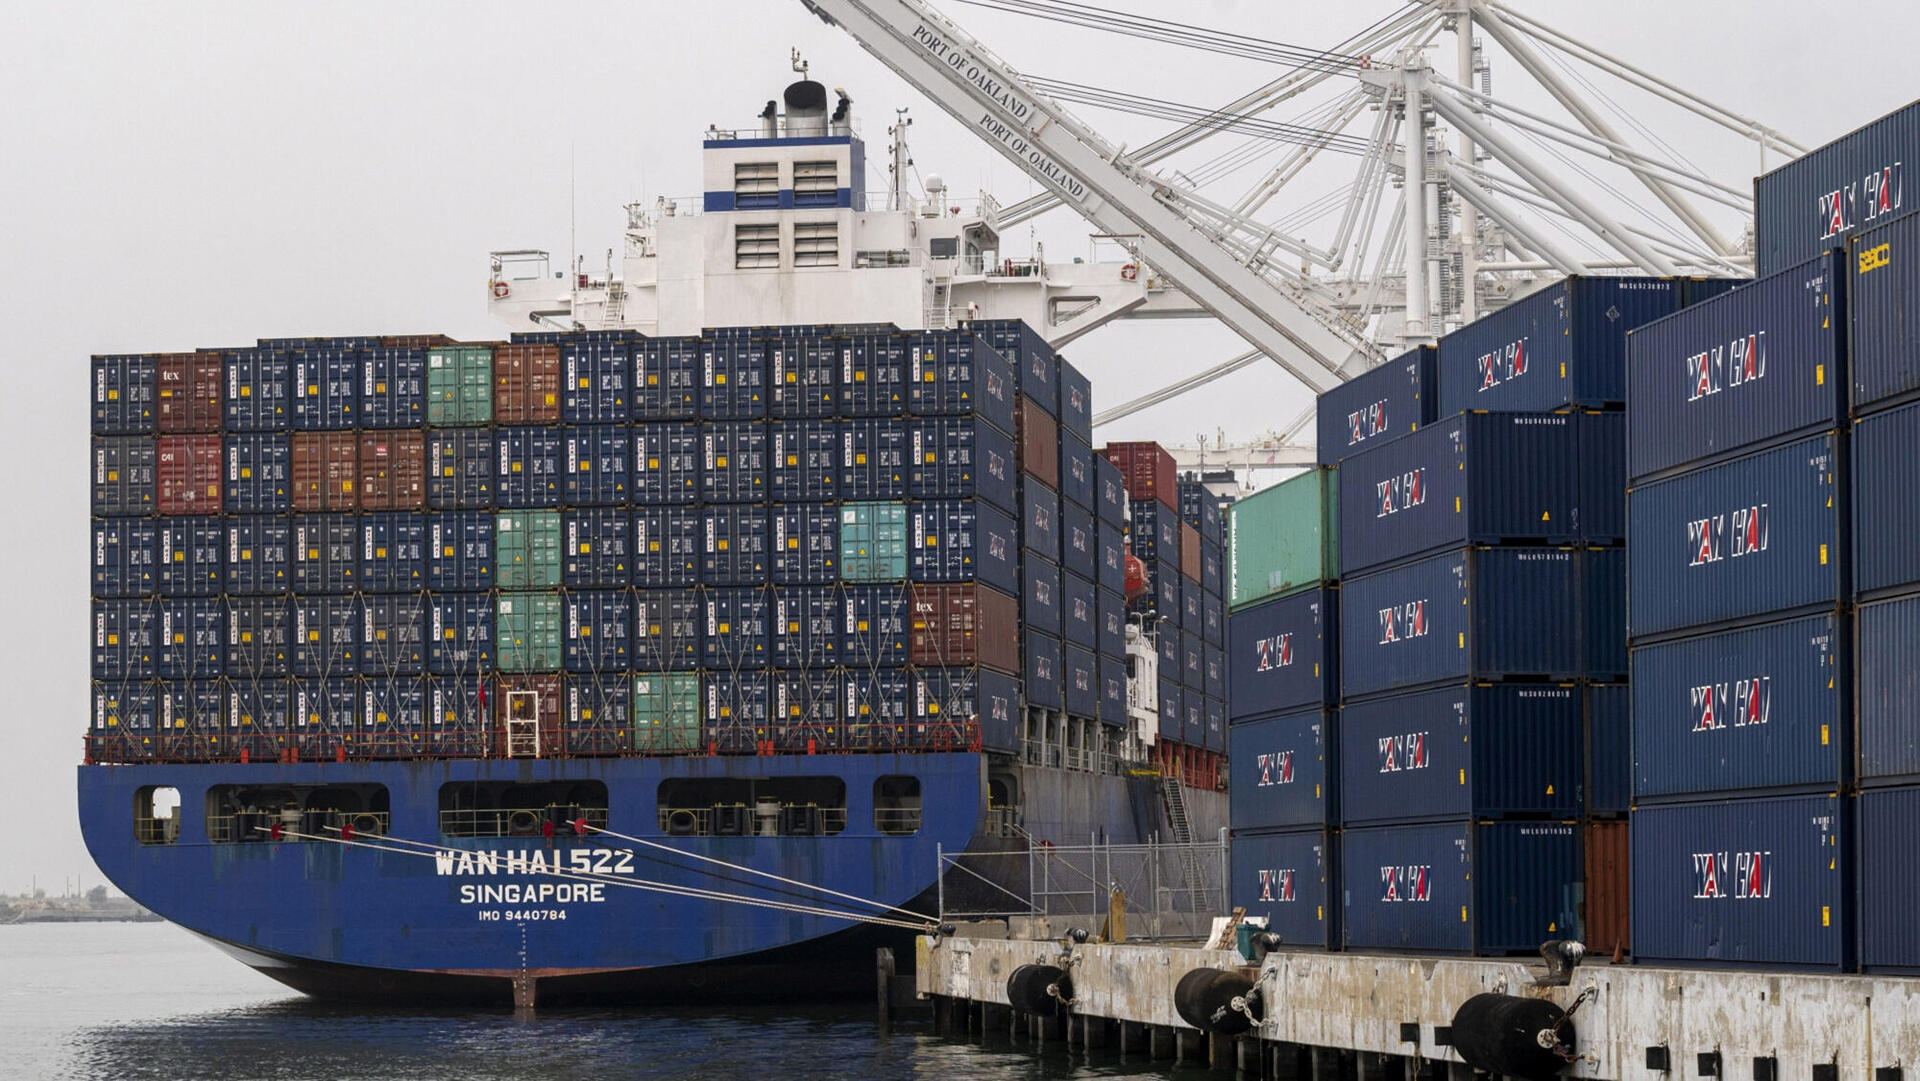 ספינה מסינגפור פורקת מכולות ב נמל אוקלנד קליפורניה